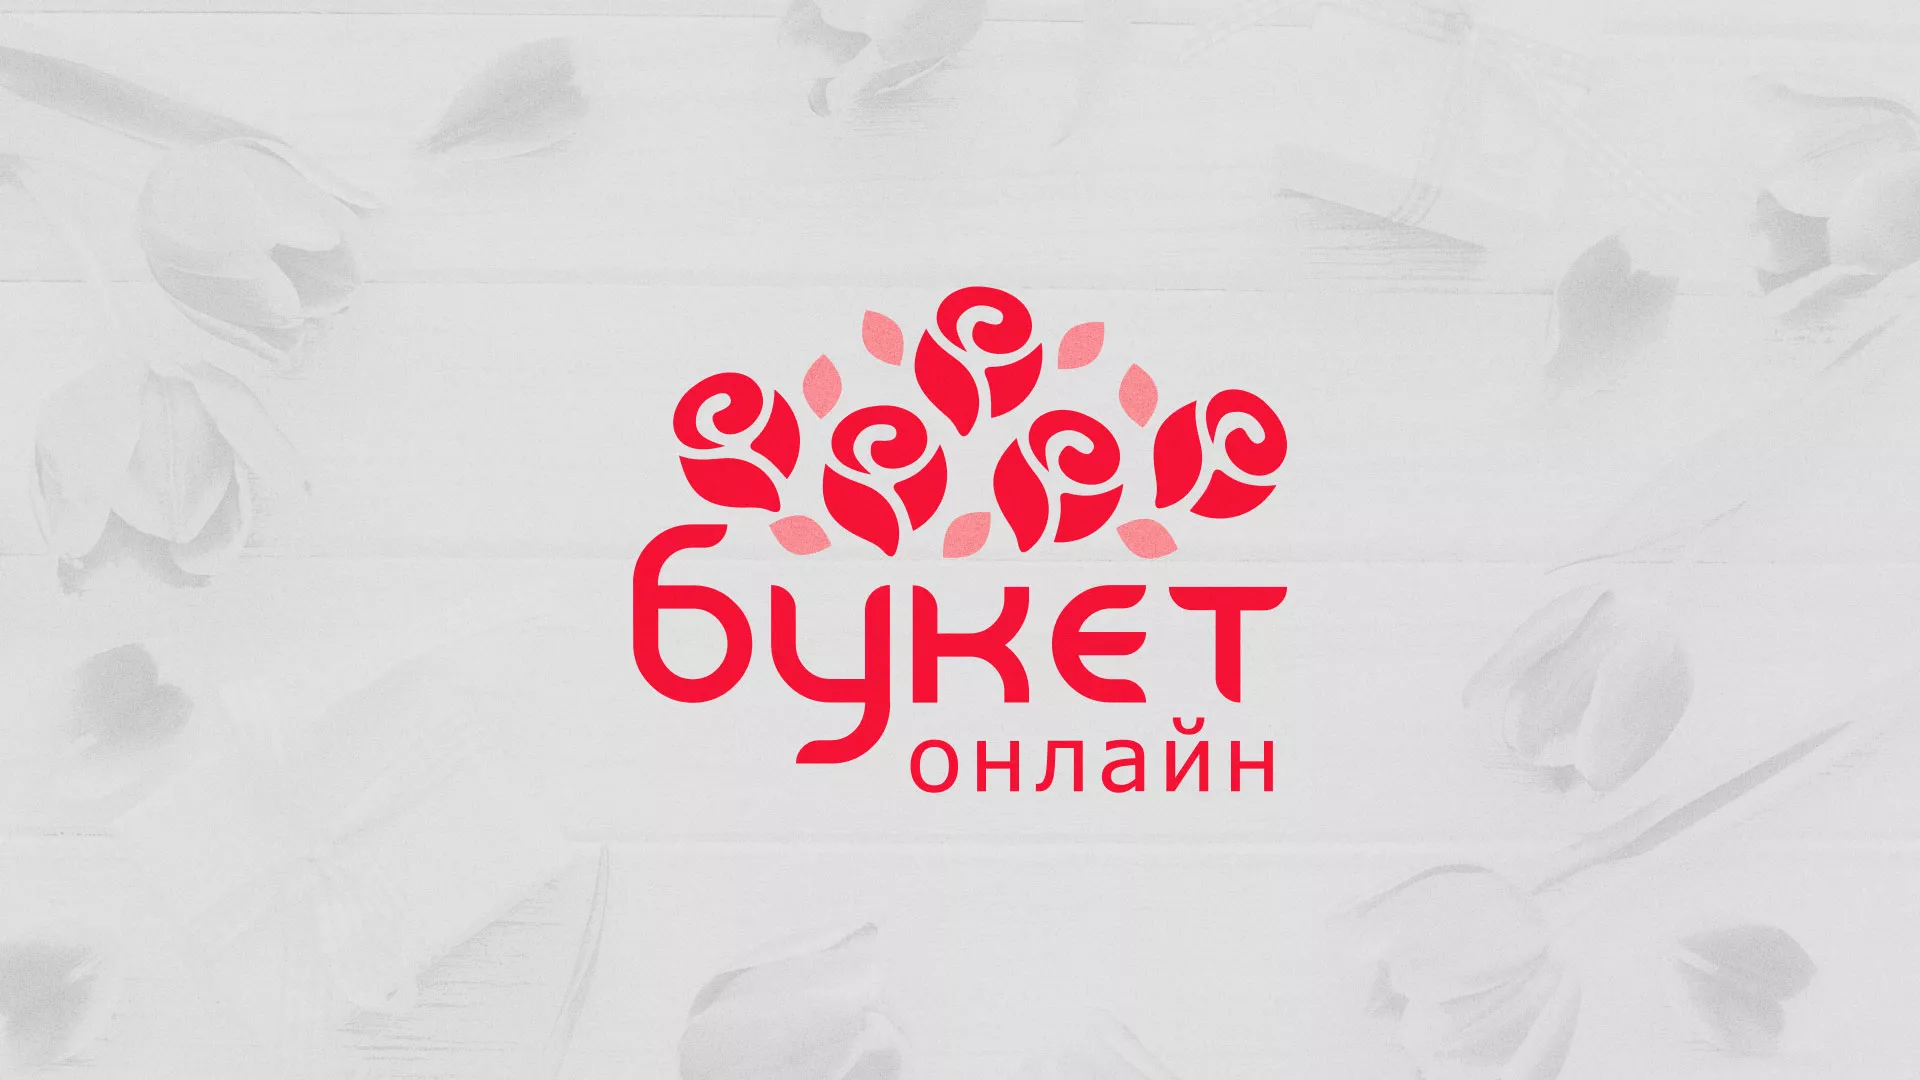 Создание интернет-магазина «Букет-онлайн» по цветам в Новосокольниках